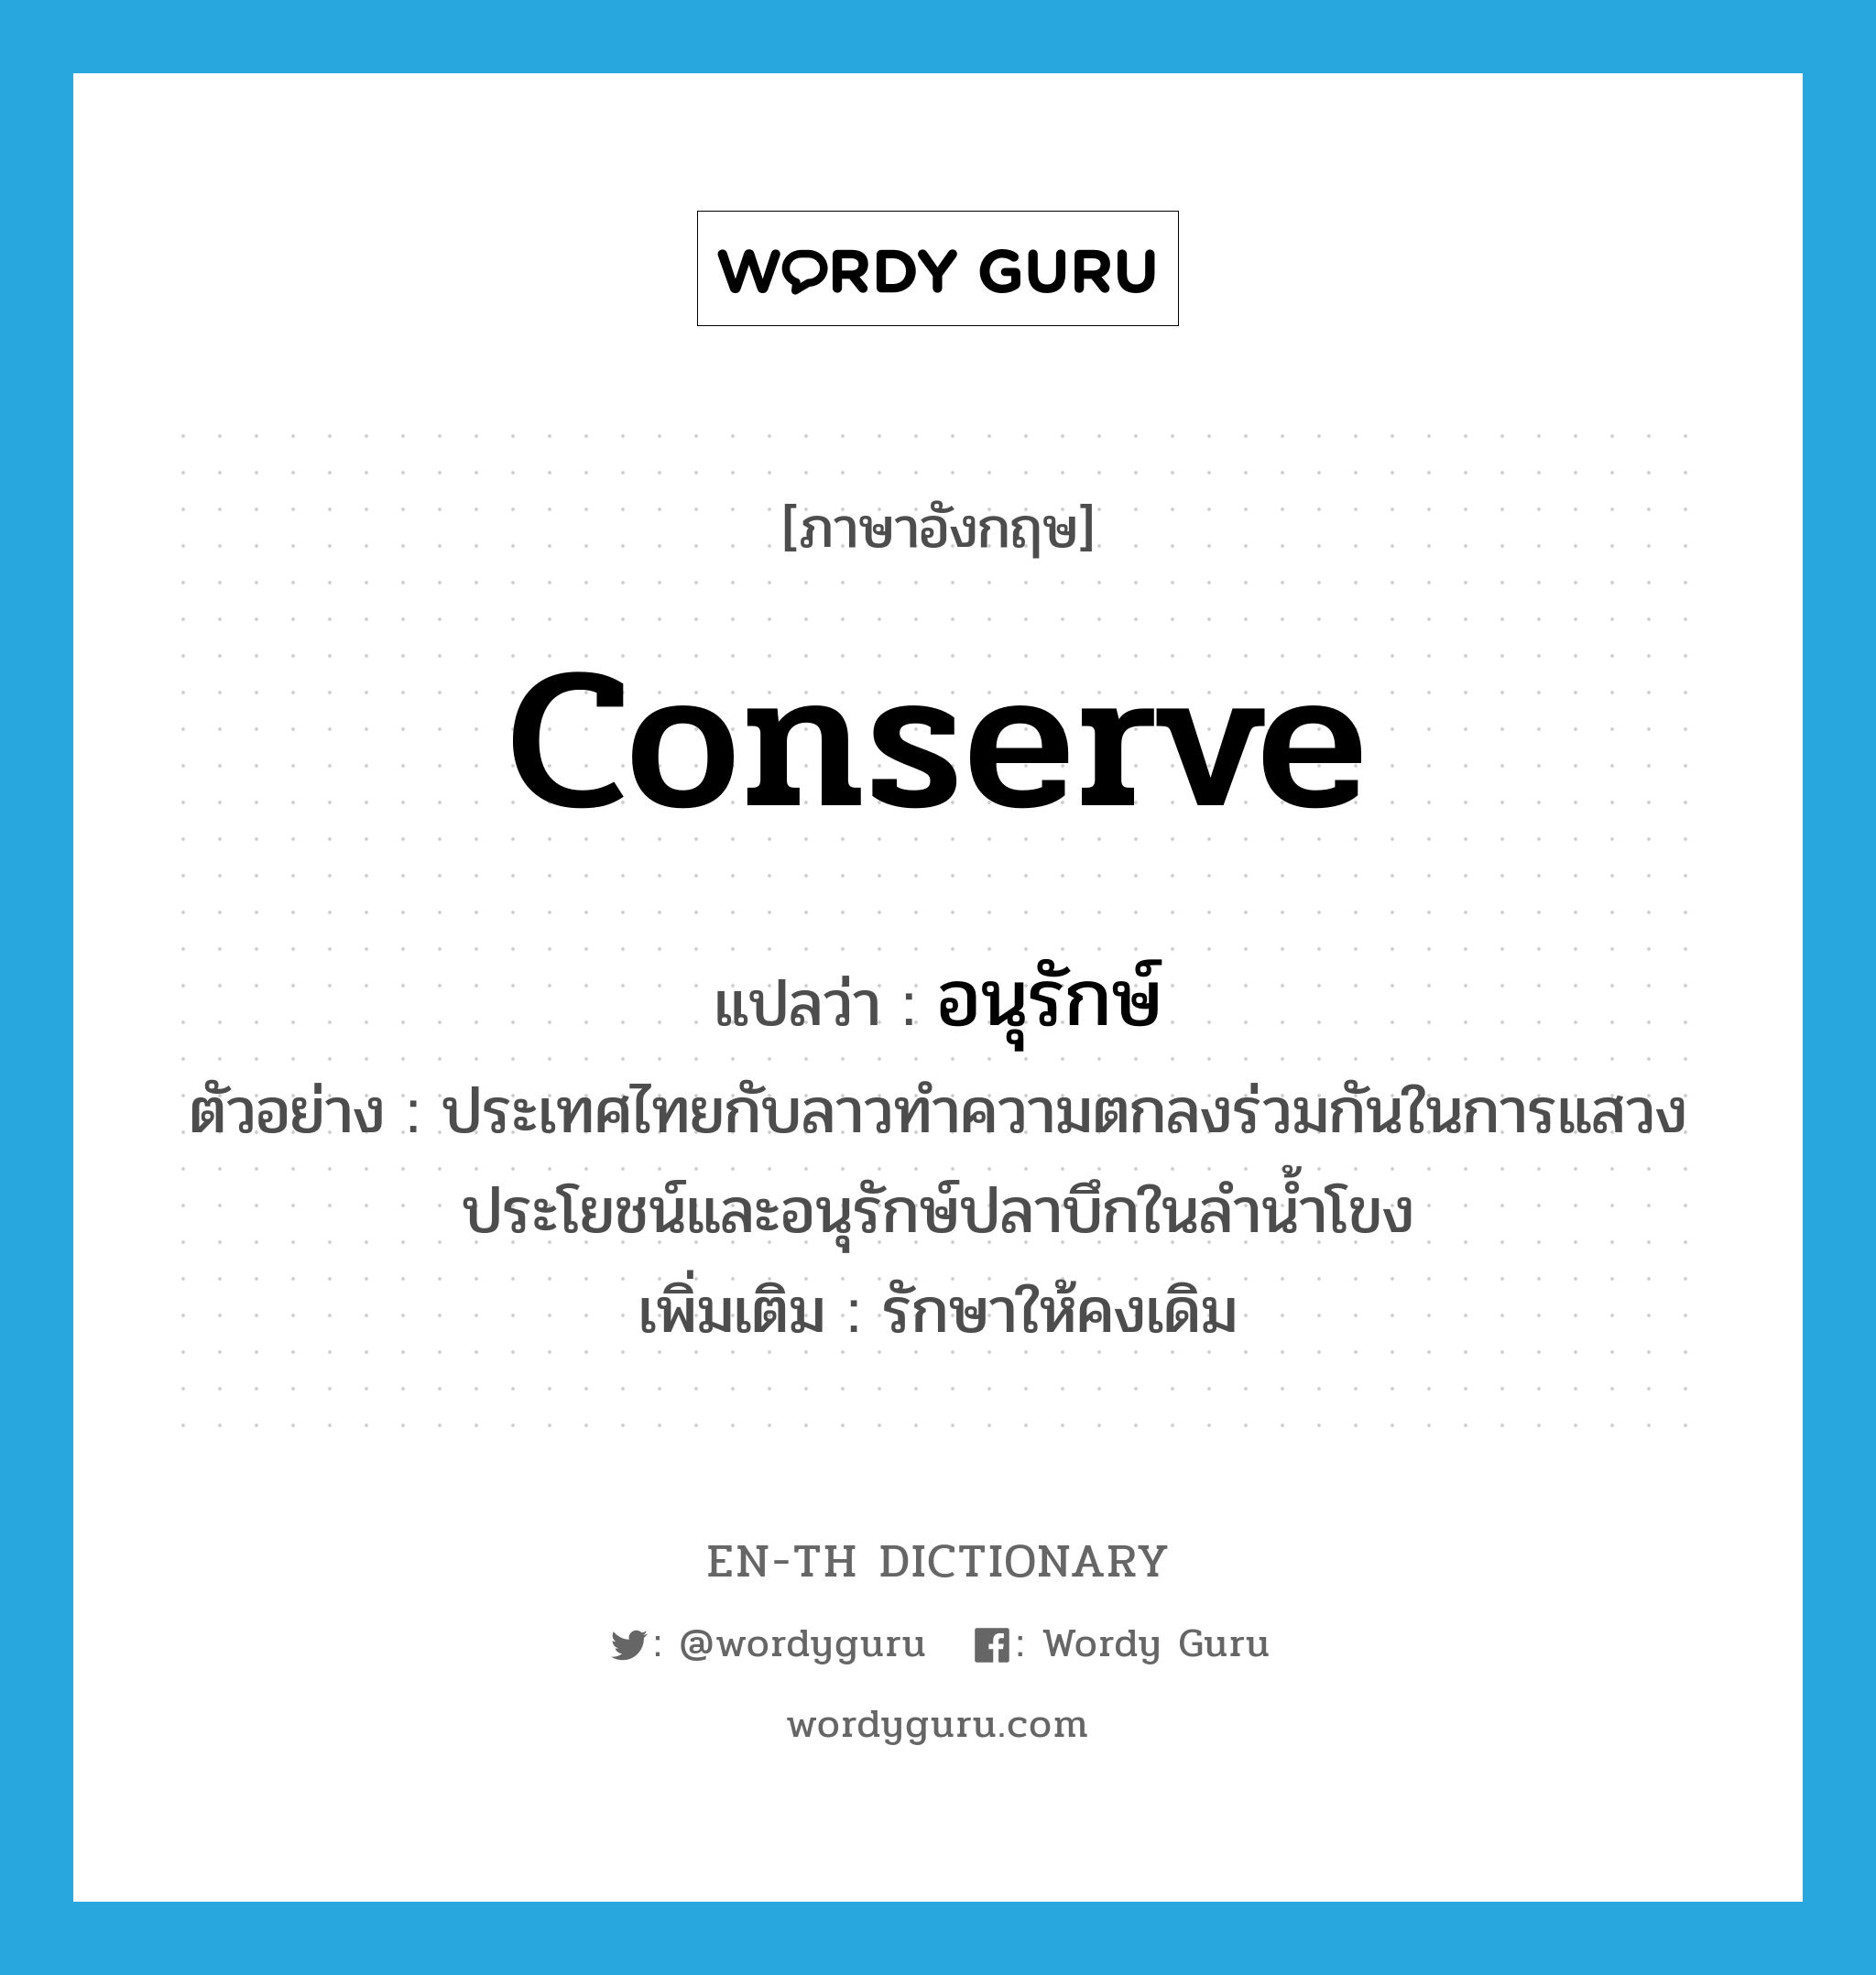 conserve แปลว่า?, คำศัพท์ภาษาอังกฤษ conserve แปลว่า อนุรักษ์ ประเภท V ตัวอย่าง ประเทศไทยกับลาวทำความตกลงร่วมกันในการแสวงประโยชน์และอนุรักษ์ปลาบึกในลำน้ำโขง เพิ่มเติม รักษาให้คงเดิม หมวด V